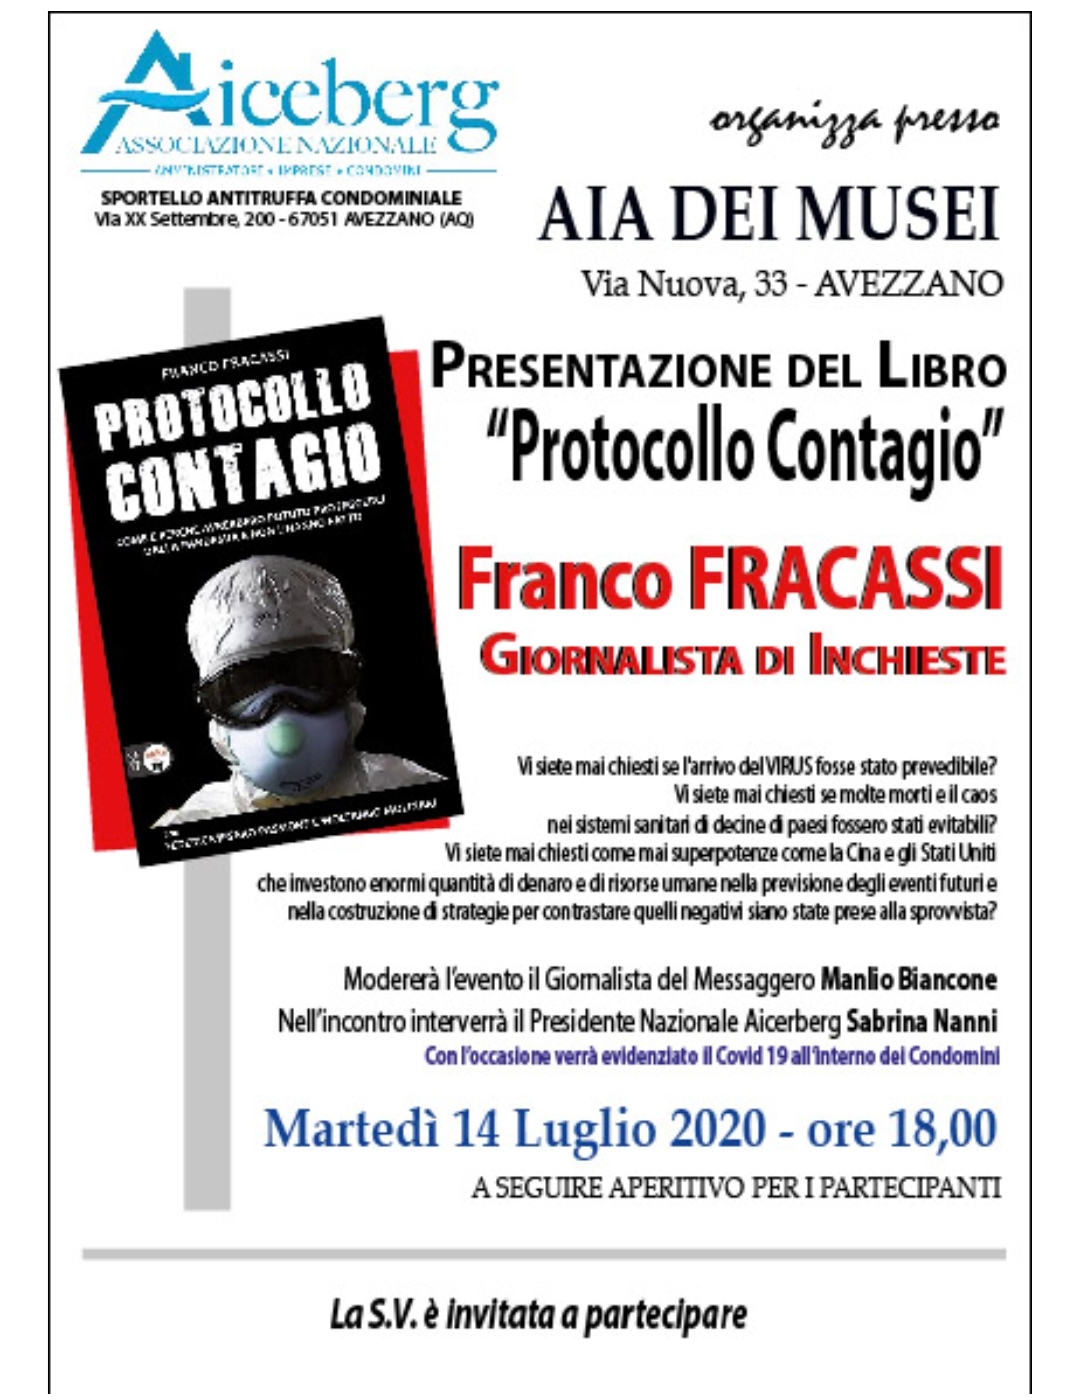 Franco Fracassi presenta il suo libro "protocollo contagio" all'aia dei musei di Avezzano il 14 luglio alle 18